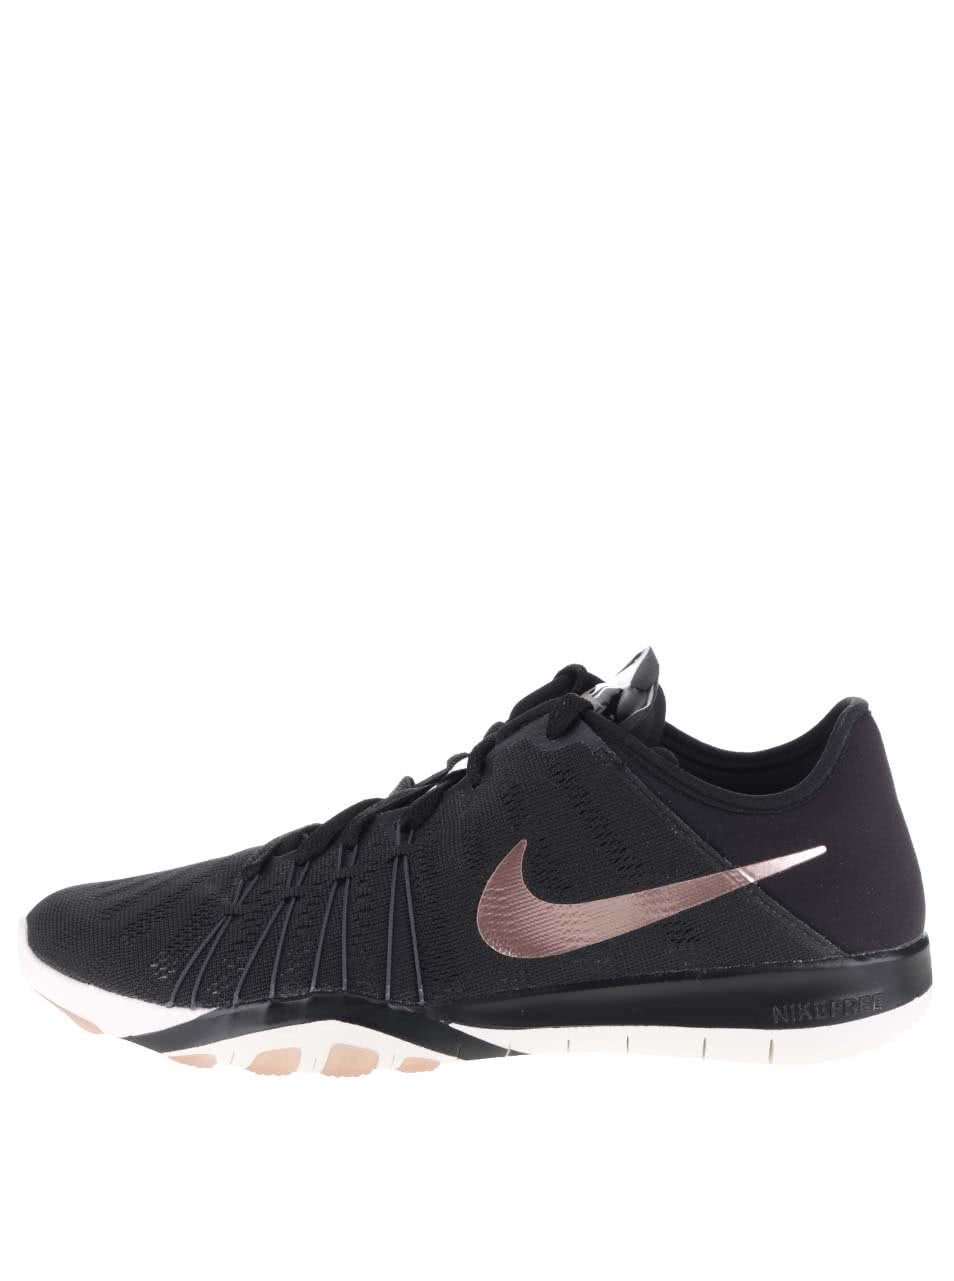 Černé dámské tenisky s detaily v růžovozlaté barvě Nike Free TR 6